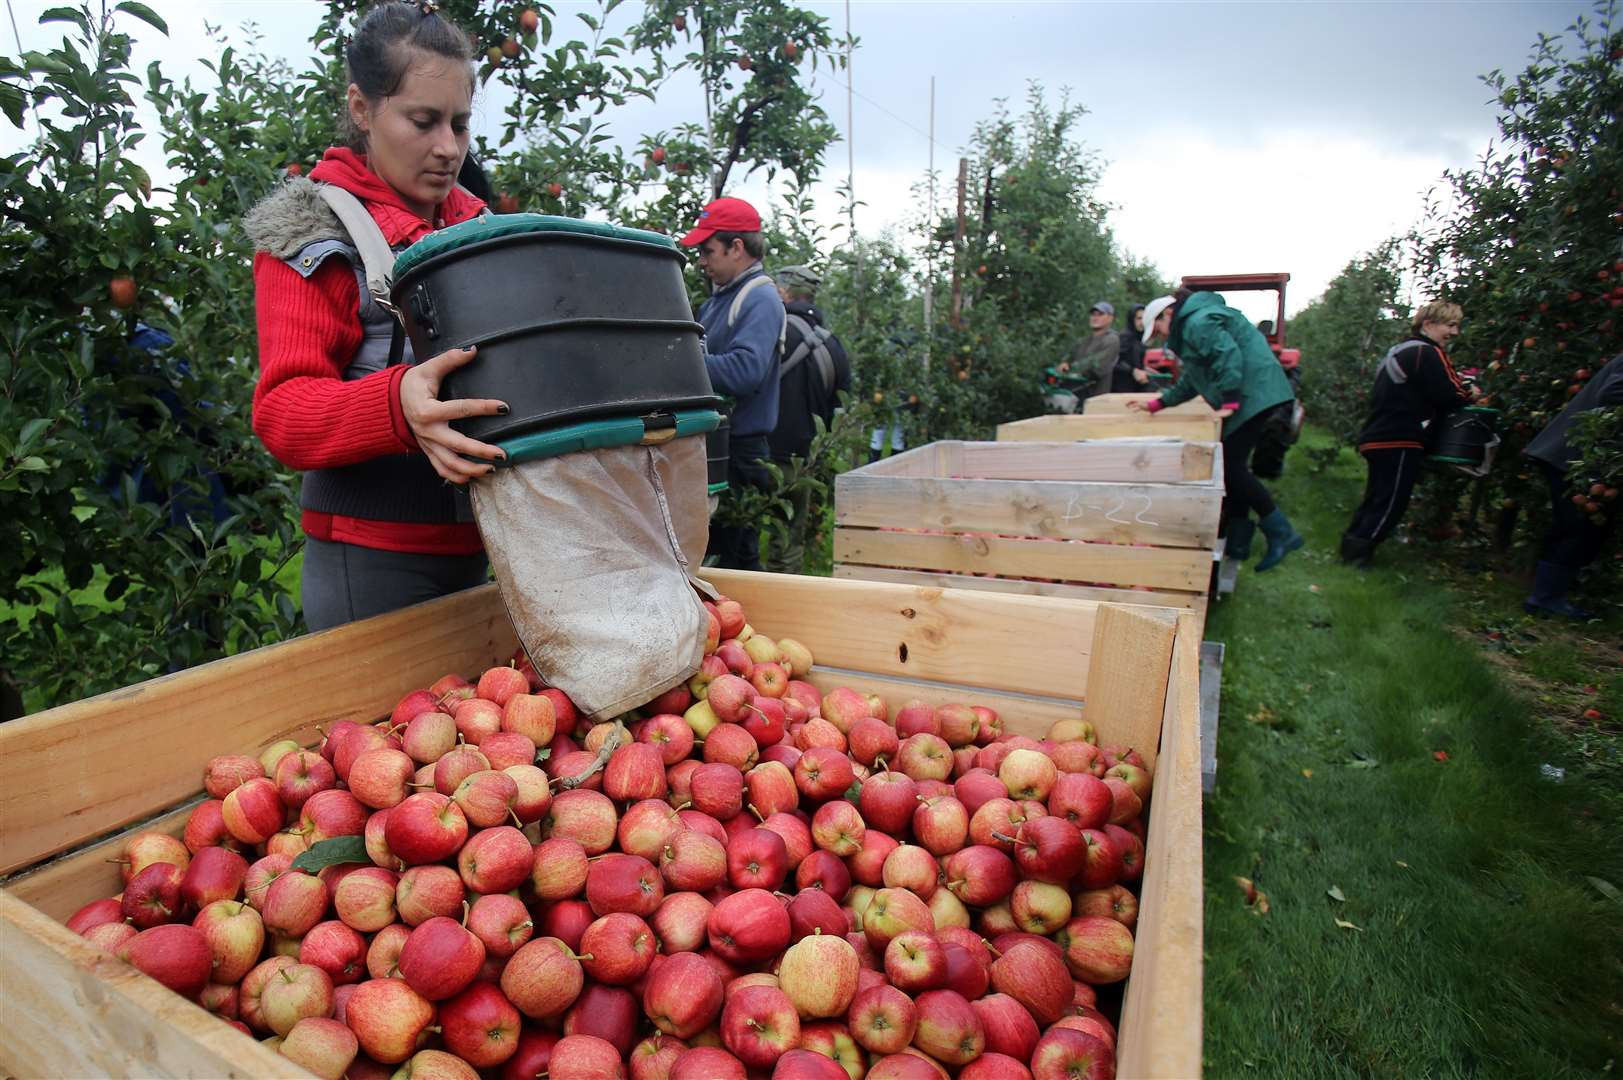 Fruit picking jobs in europe 2012